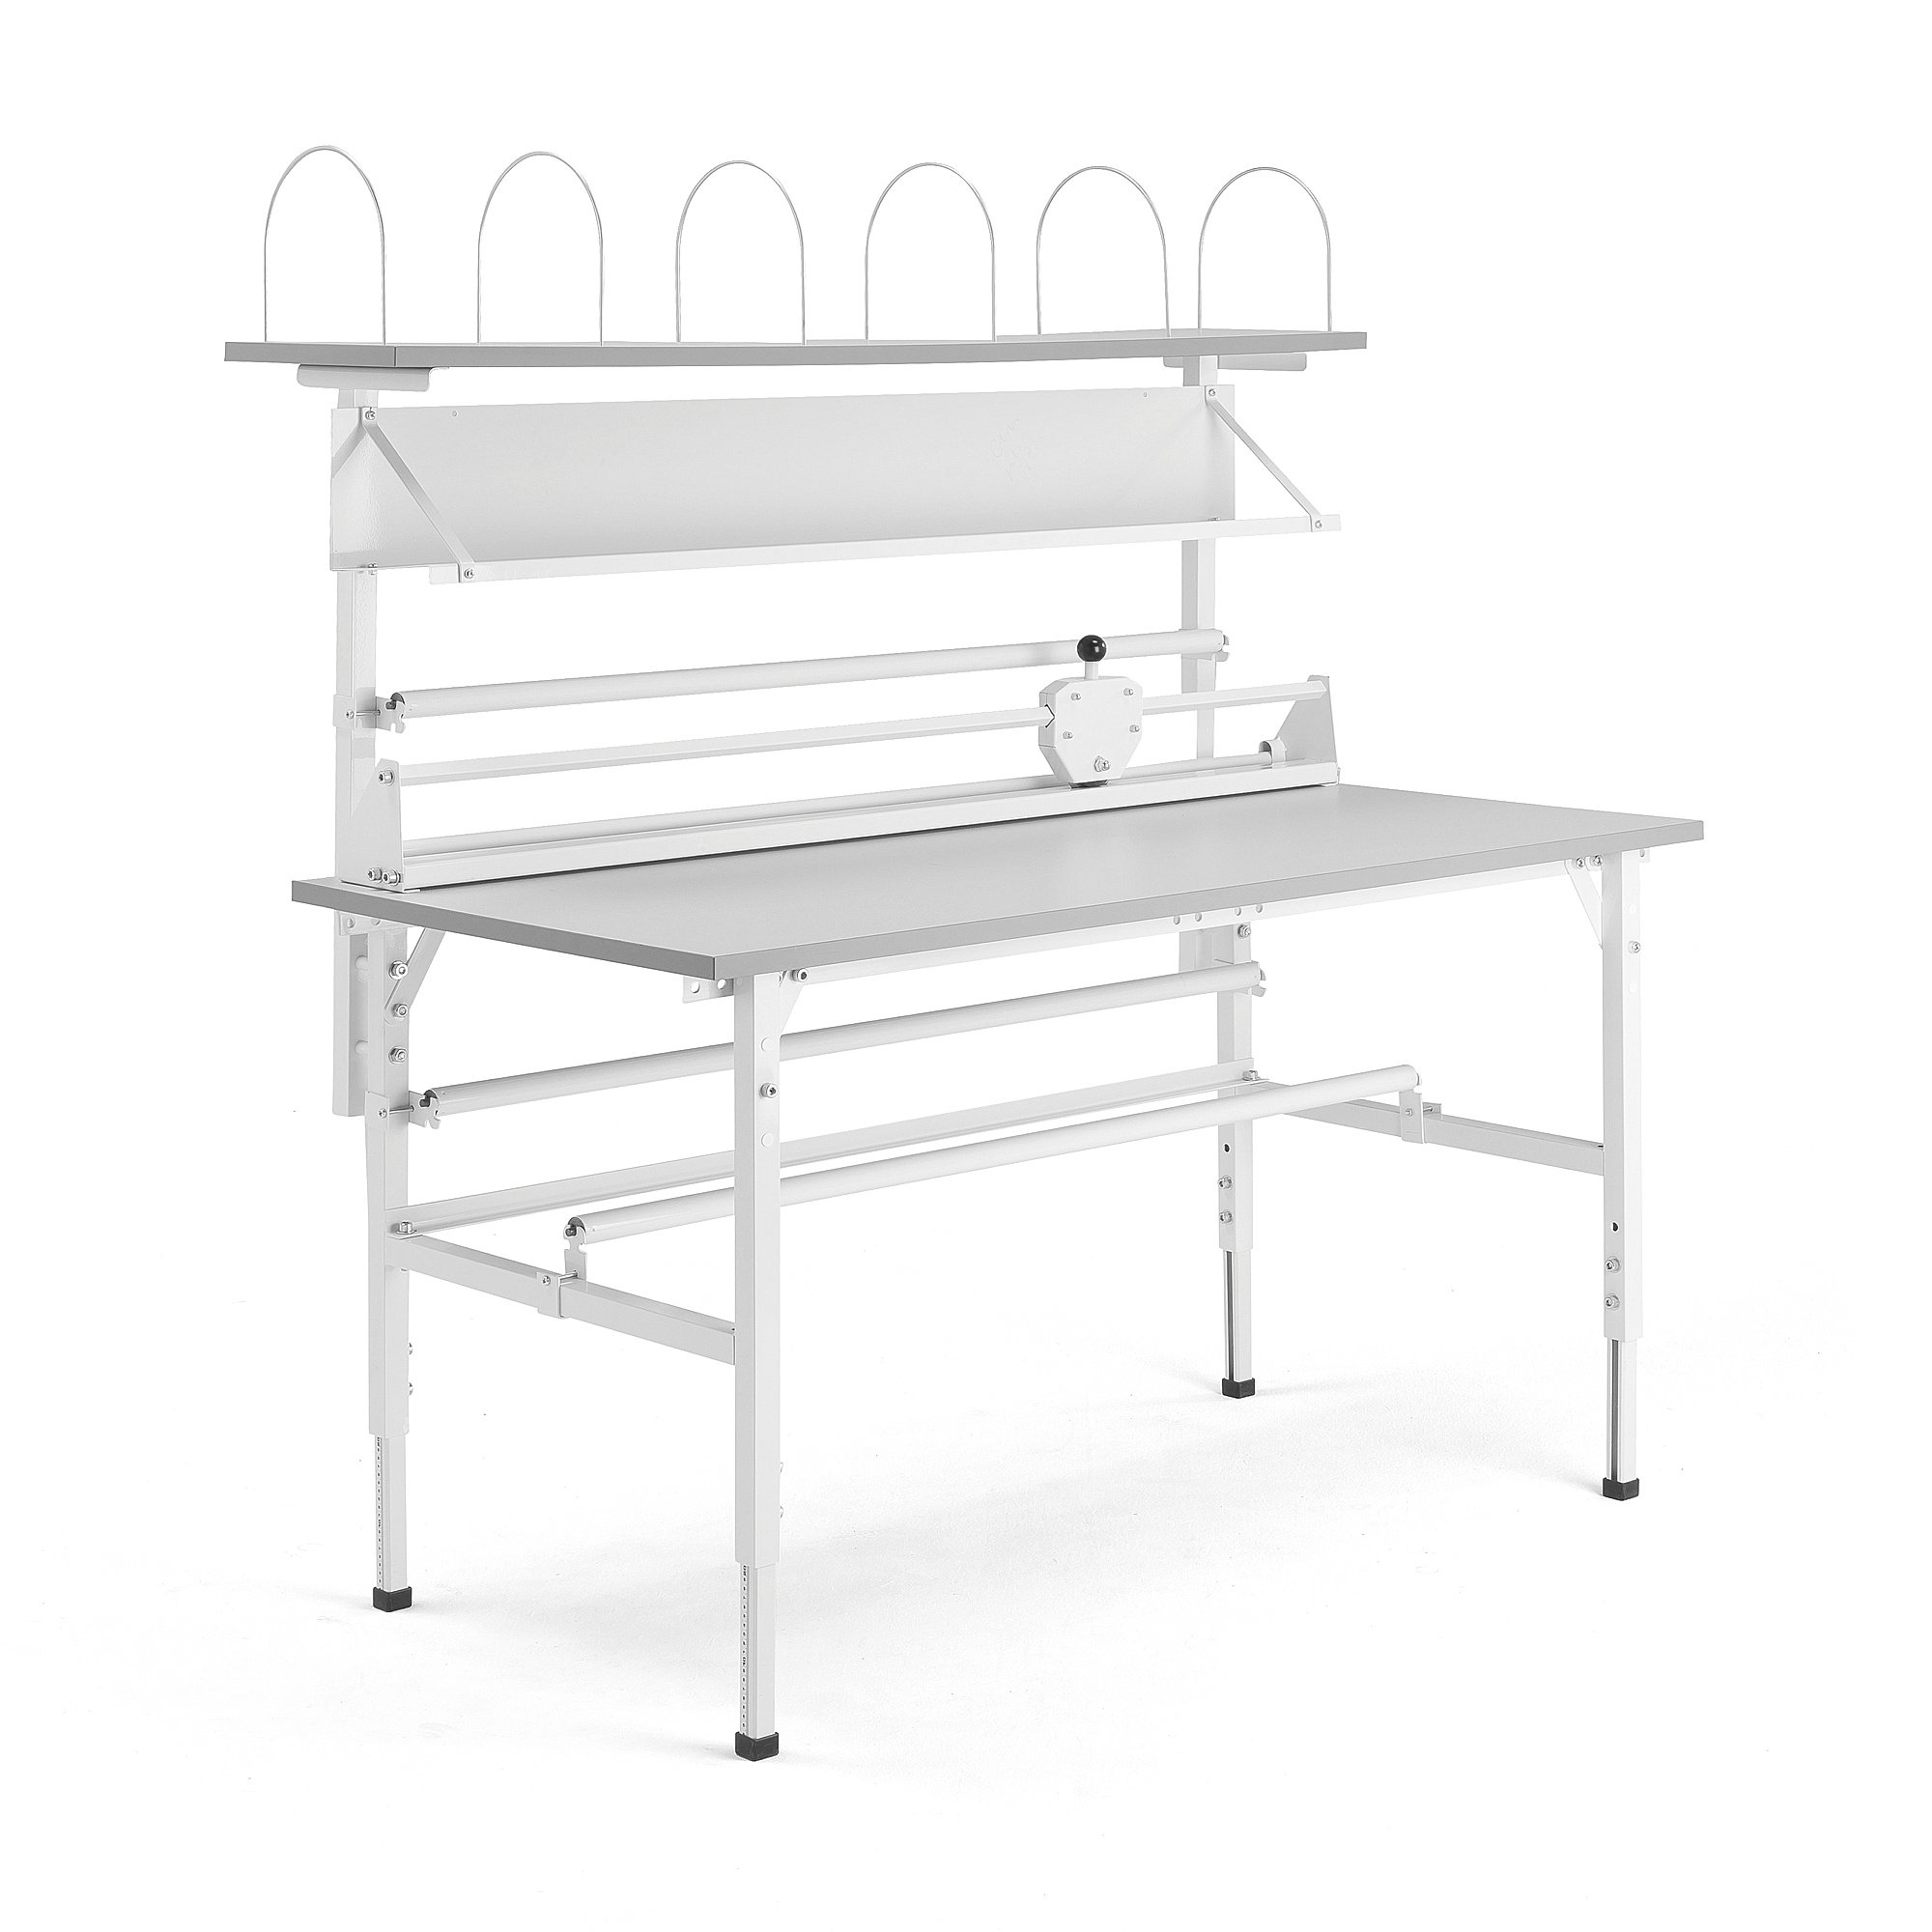 E-shop Dielenský baliaci stôl SEND, s policami, 1600x800 mm, šedý